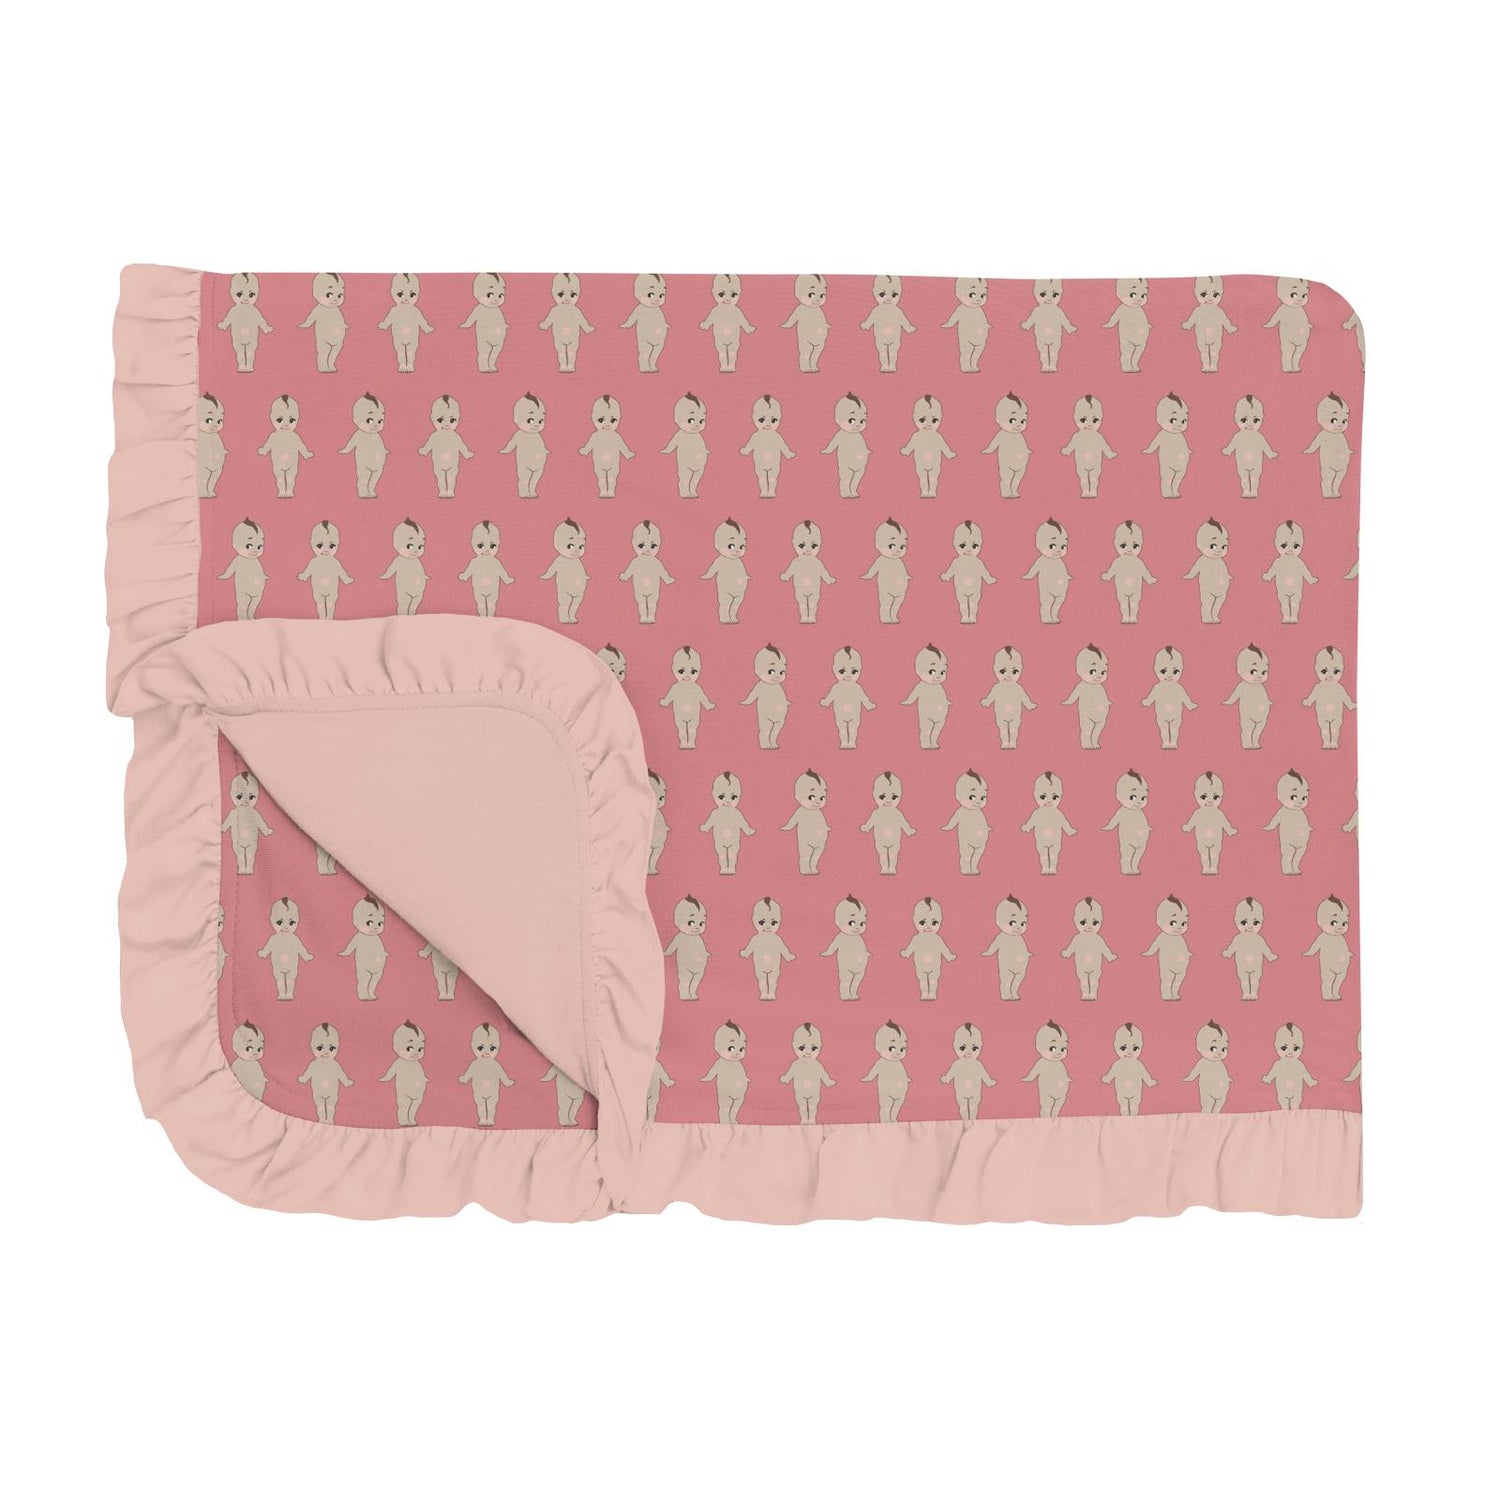 Print Ruffle Toddler Blanket in Desert Rose Baby Doll